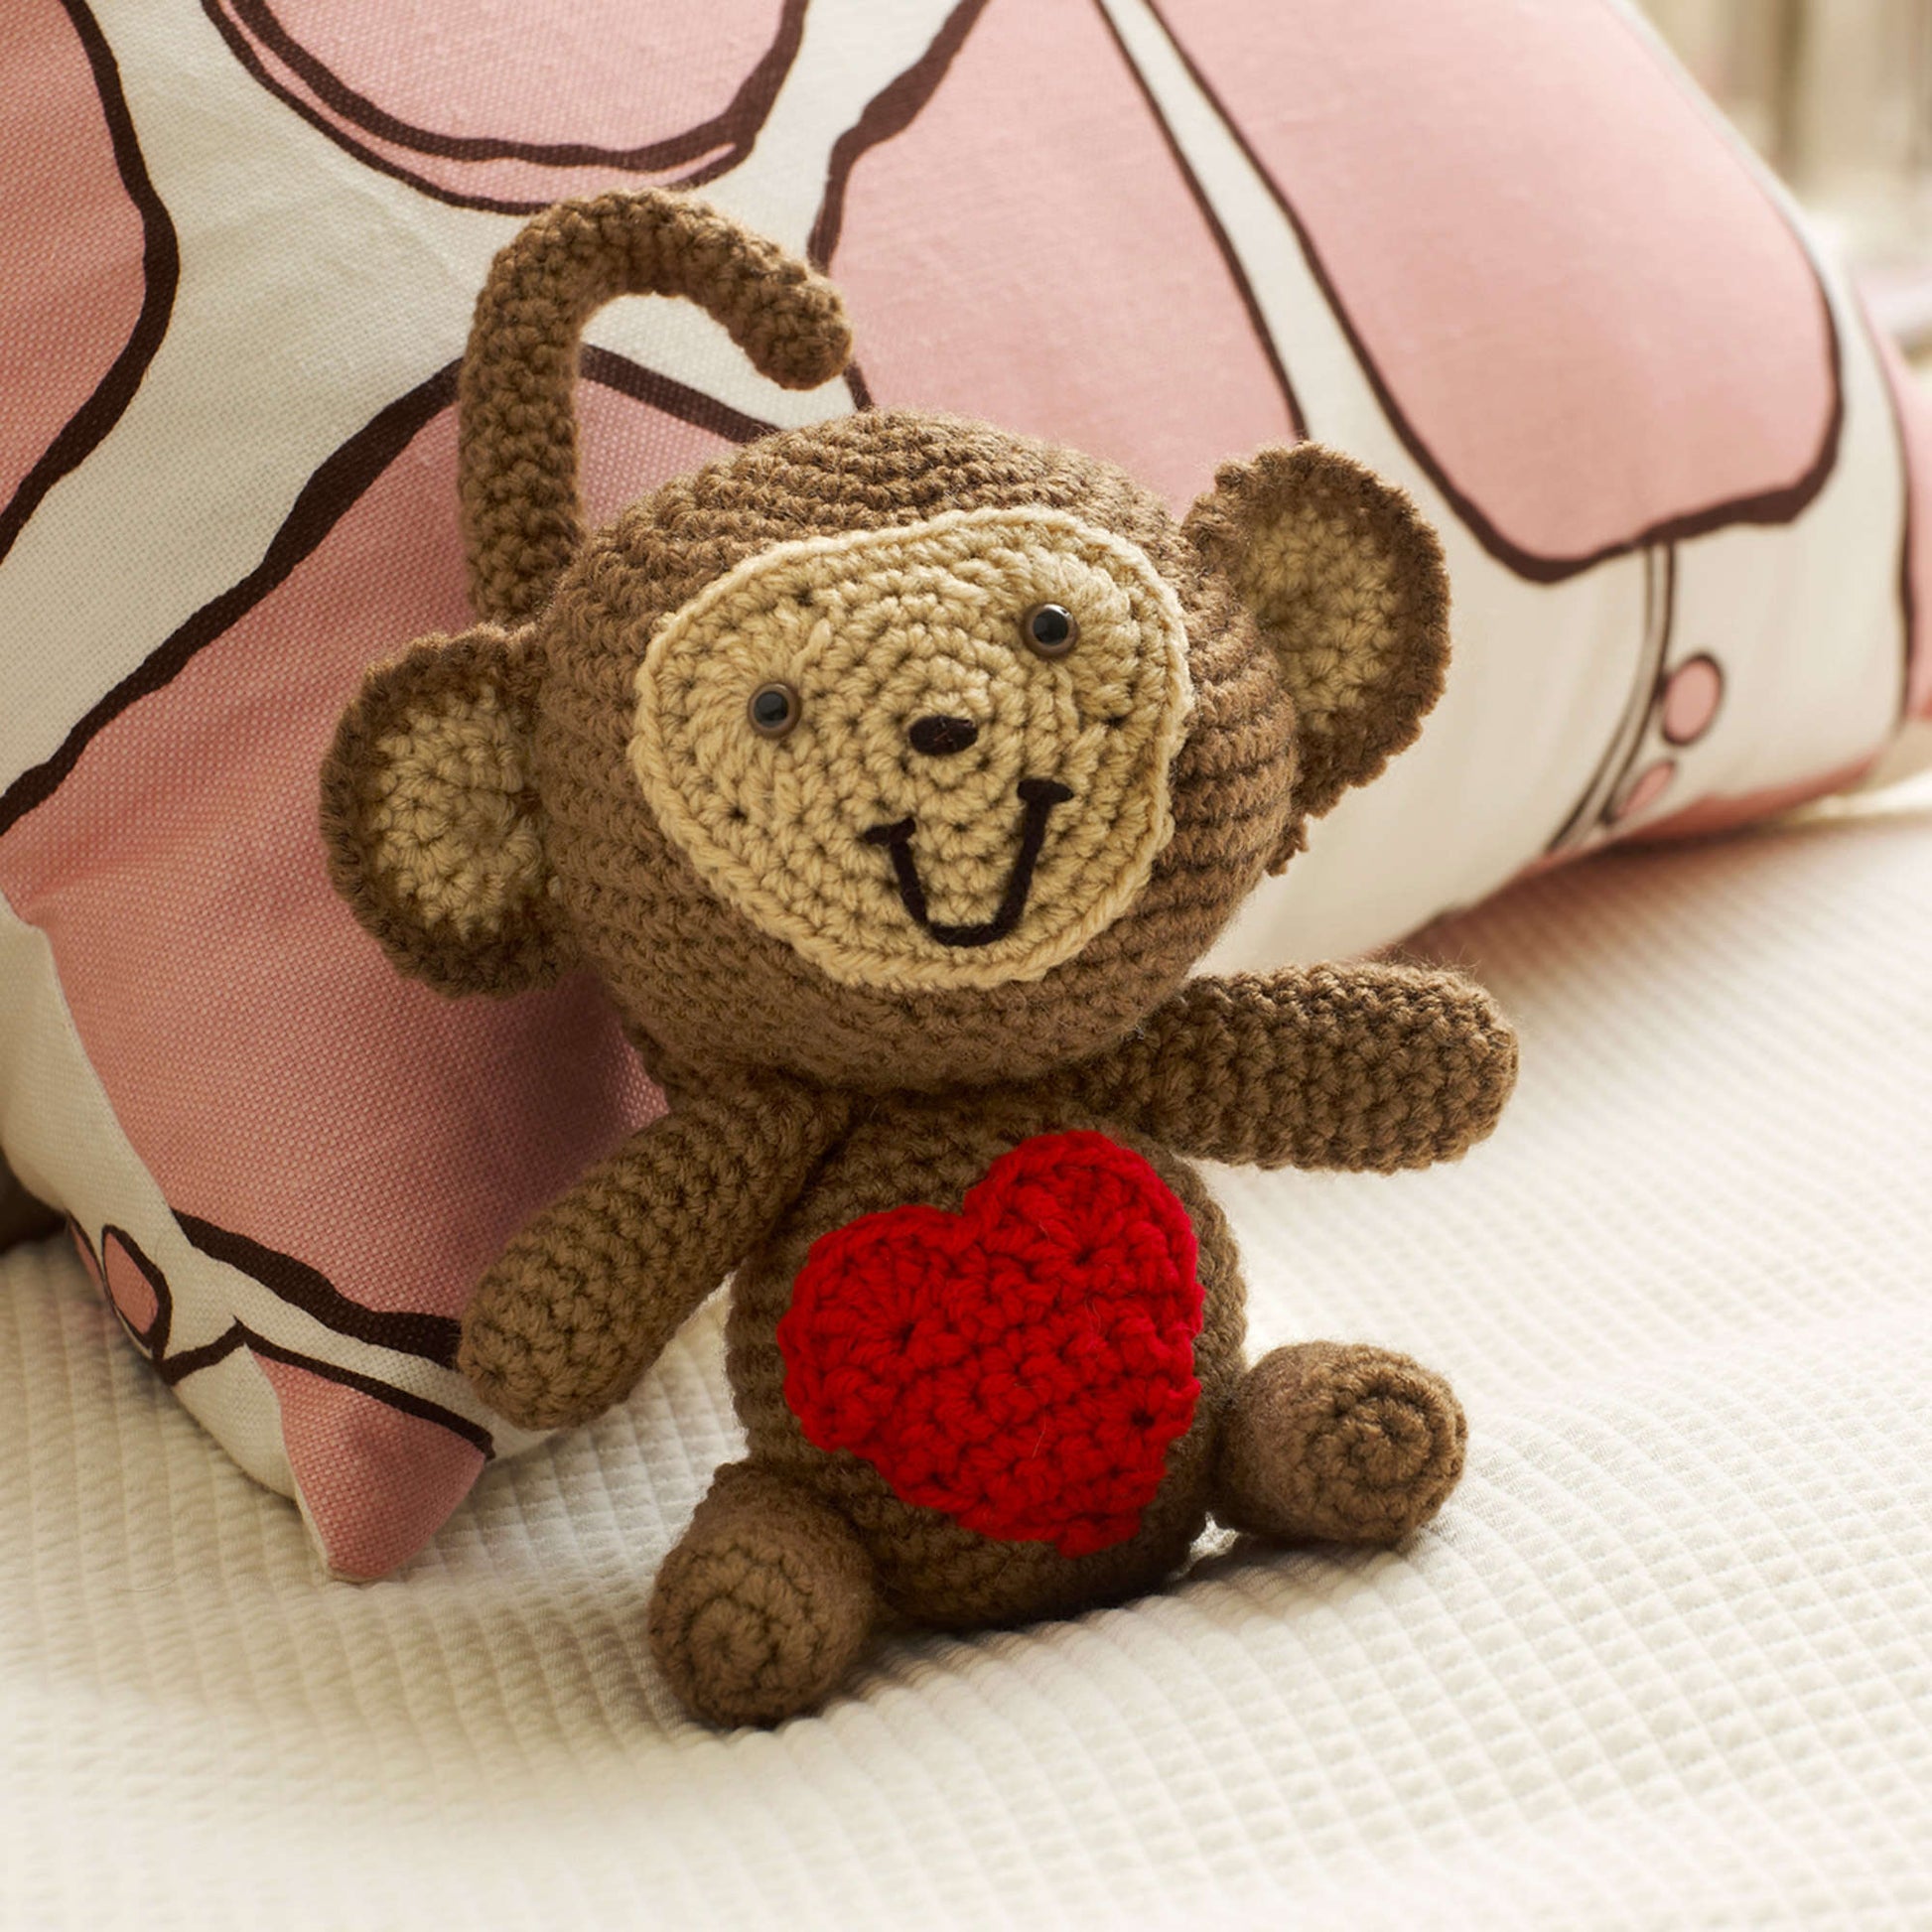 Free Red Heart Crochet Love Monkey Pattern